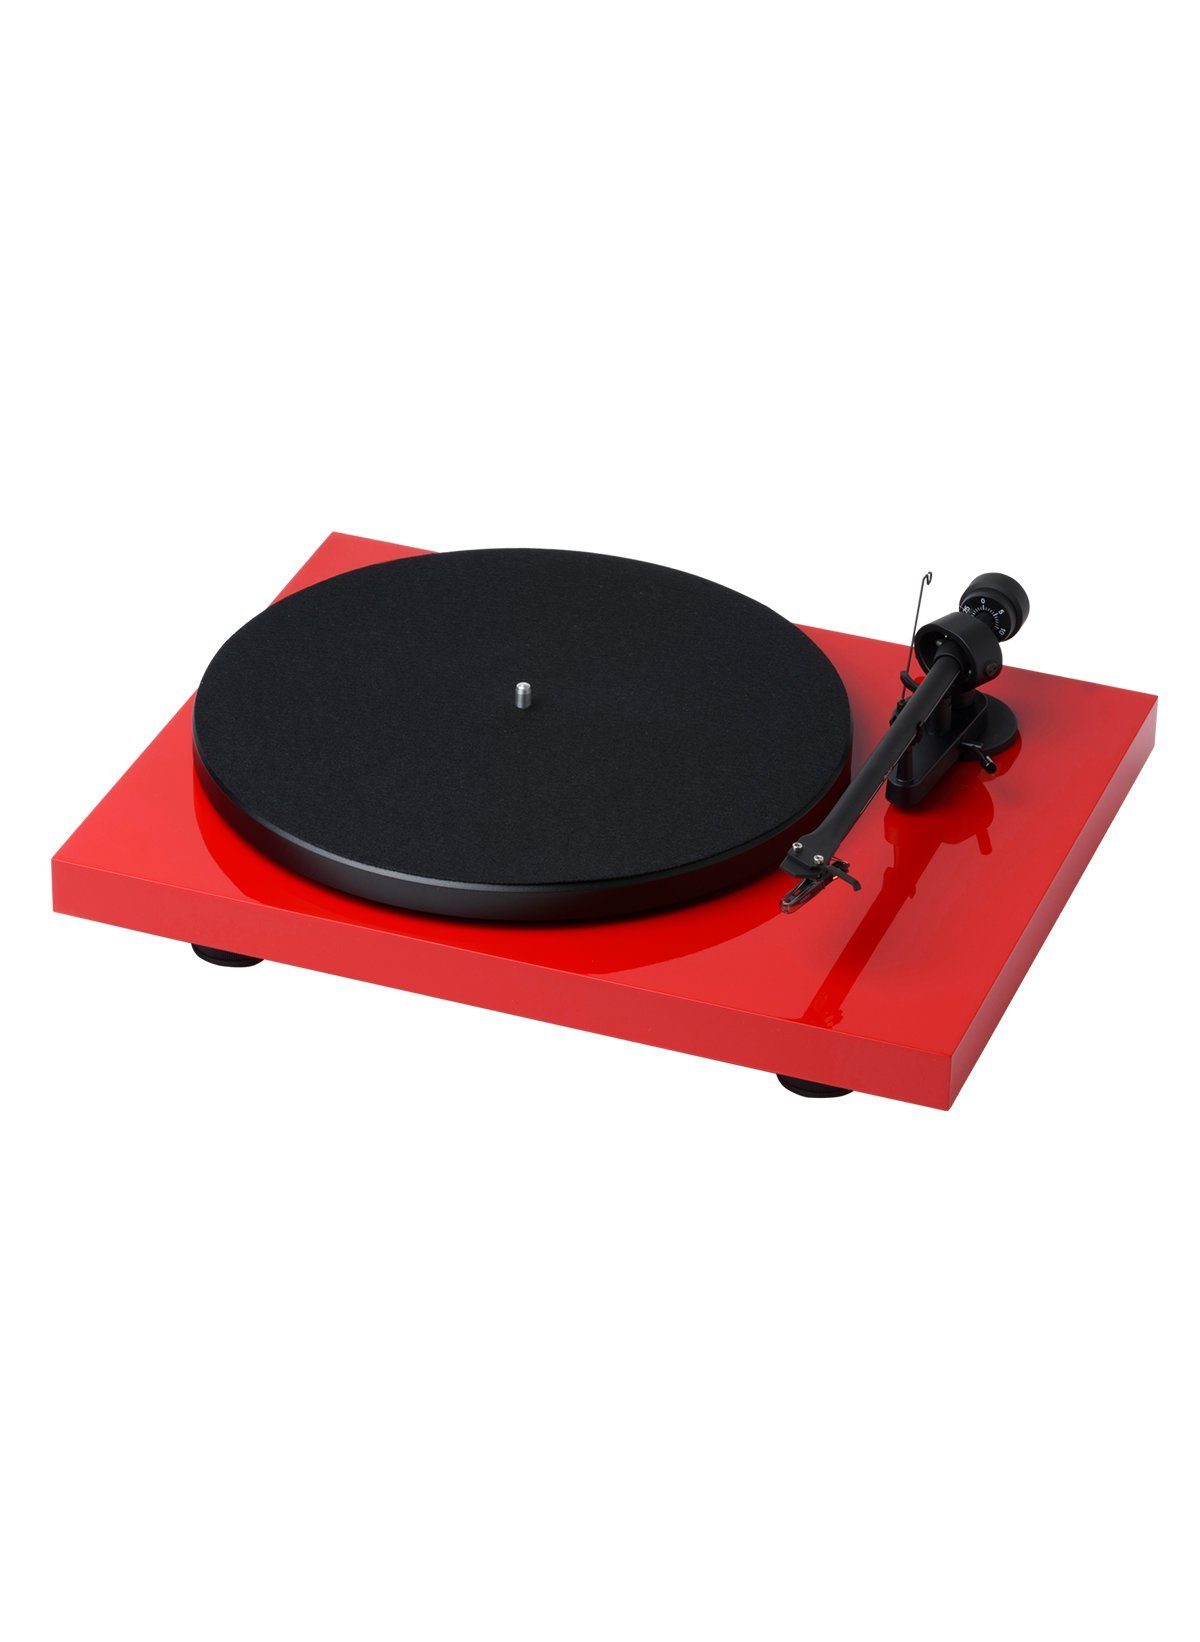 Pro-Ject Debut RecordMaster II OM5e Plattenspieler Red